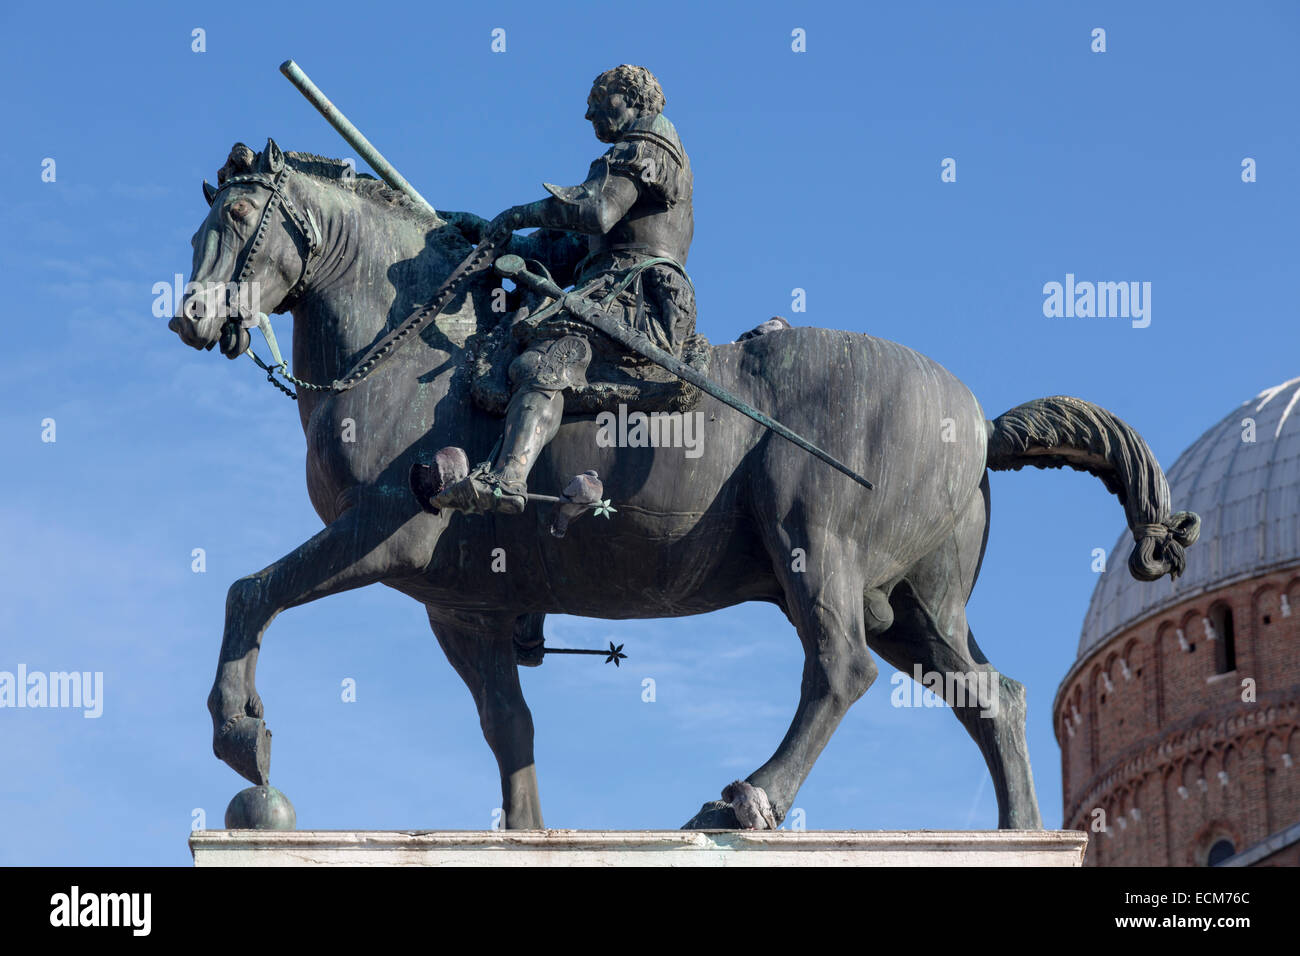 Equestrian Statue of Gattamelata by Donatello, 1453, Piazza del Santo, Padua, Italy Stock Photo